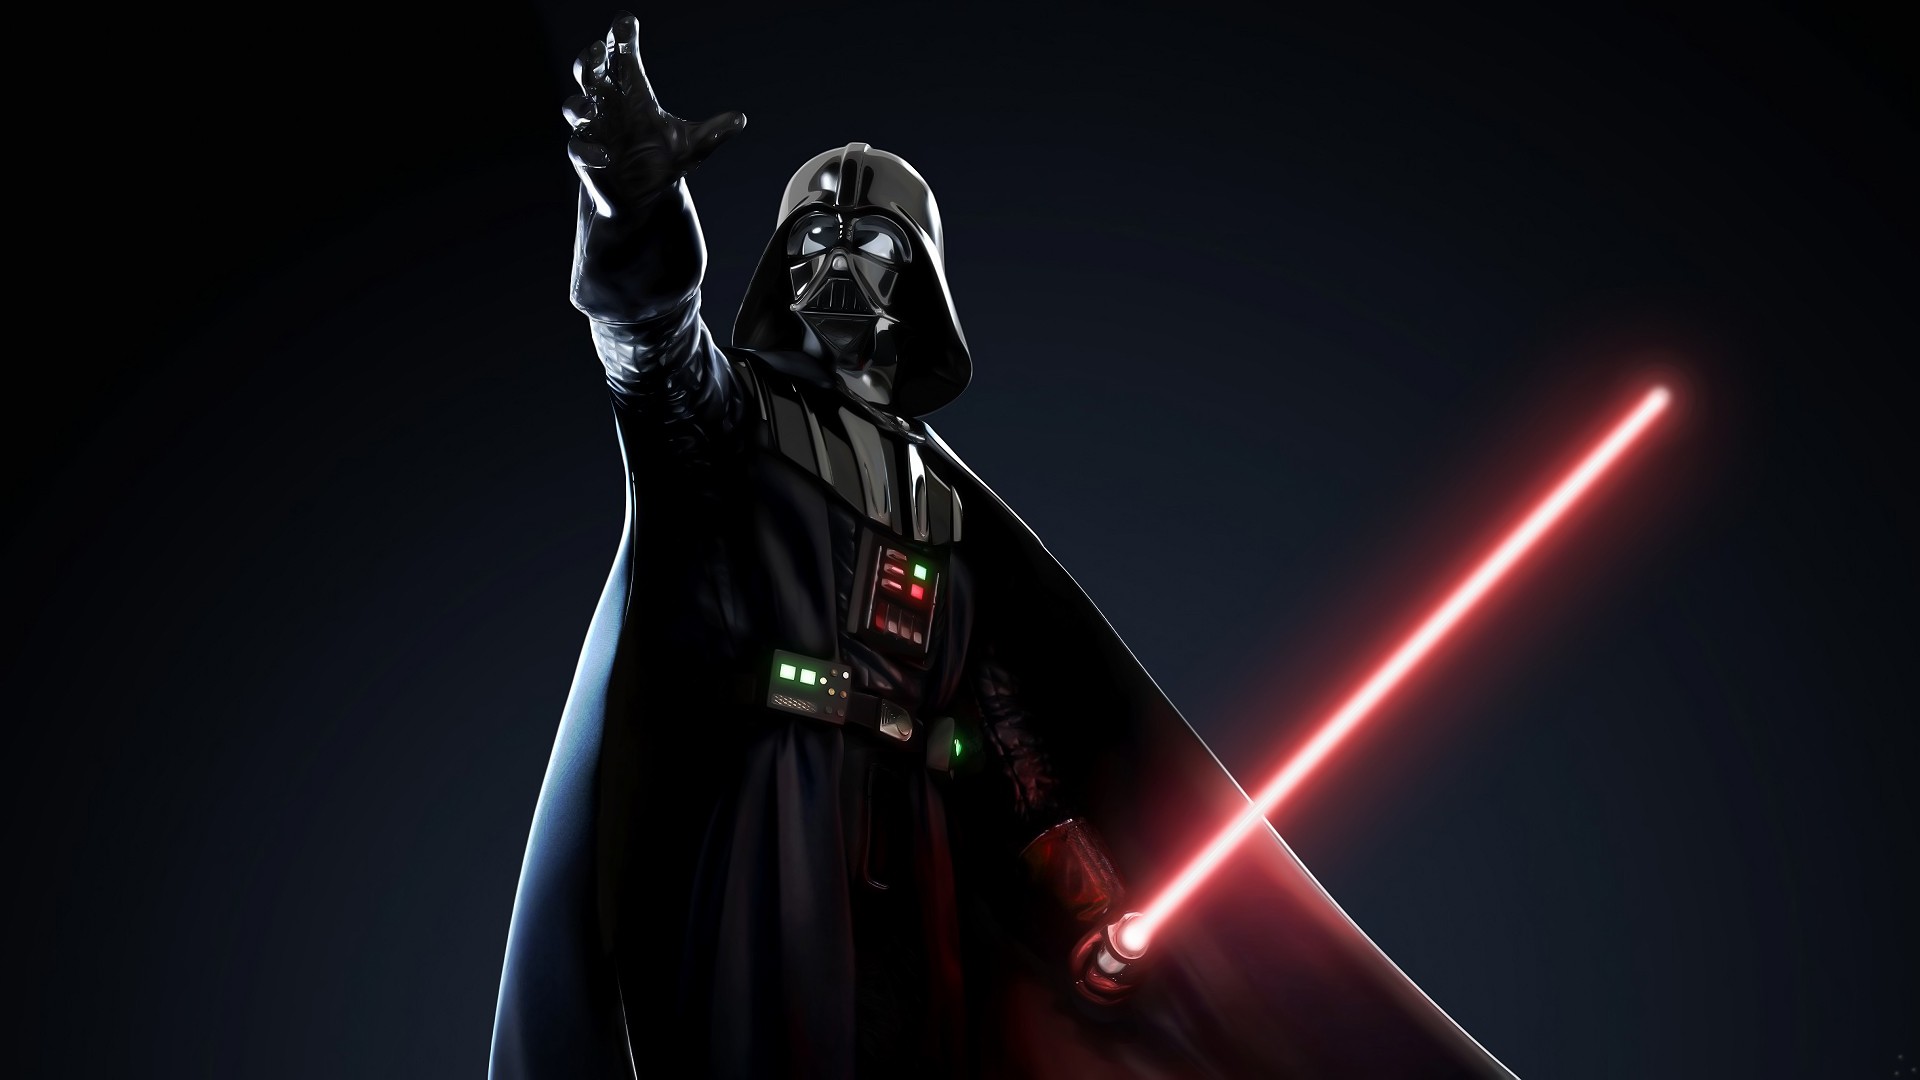 Star Wars, lightsabers, Darth Vader, LucasArts - desktop wallpaper